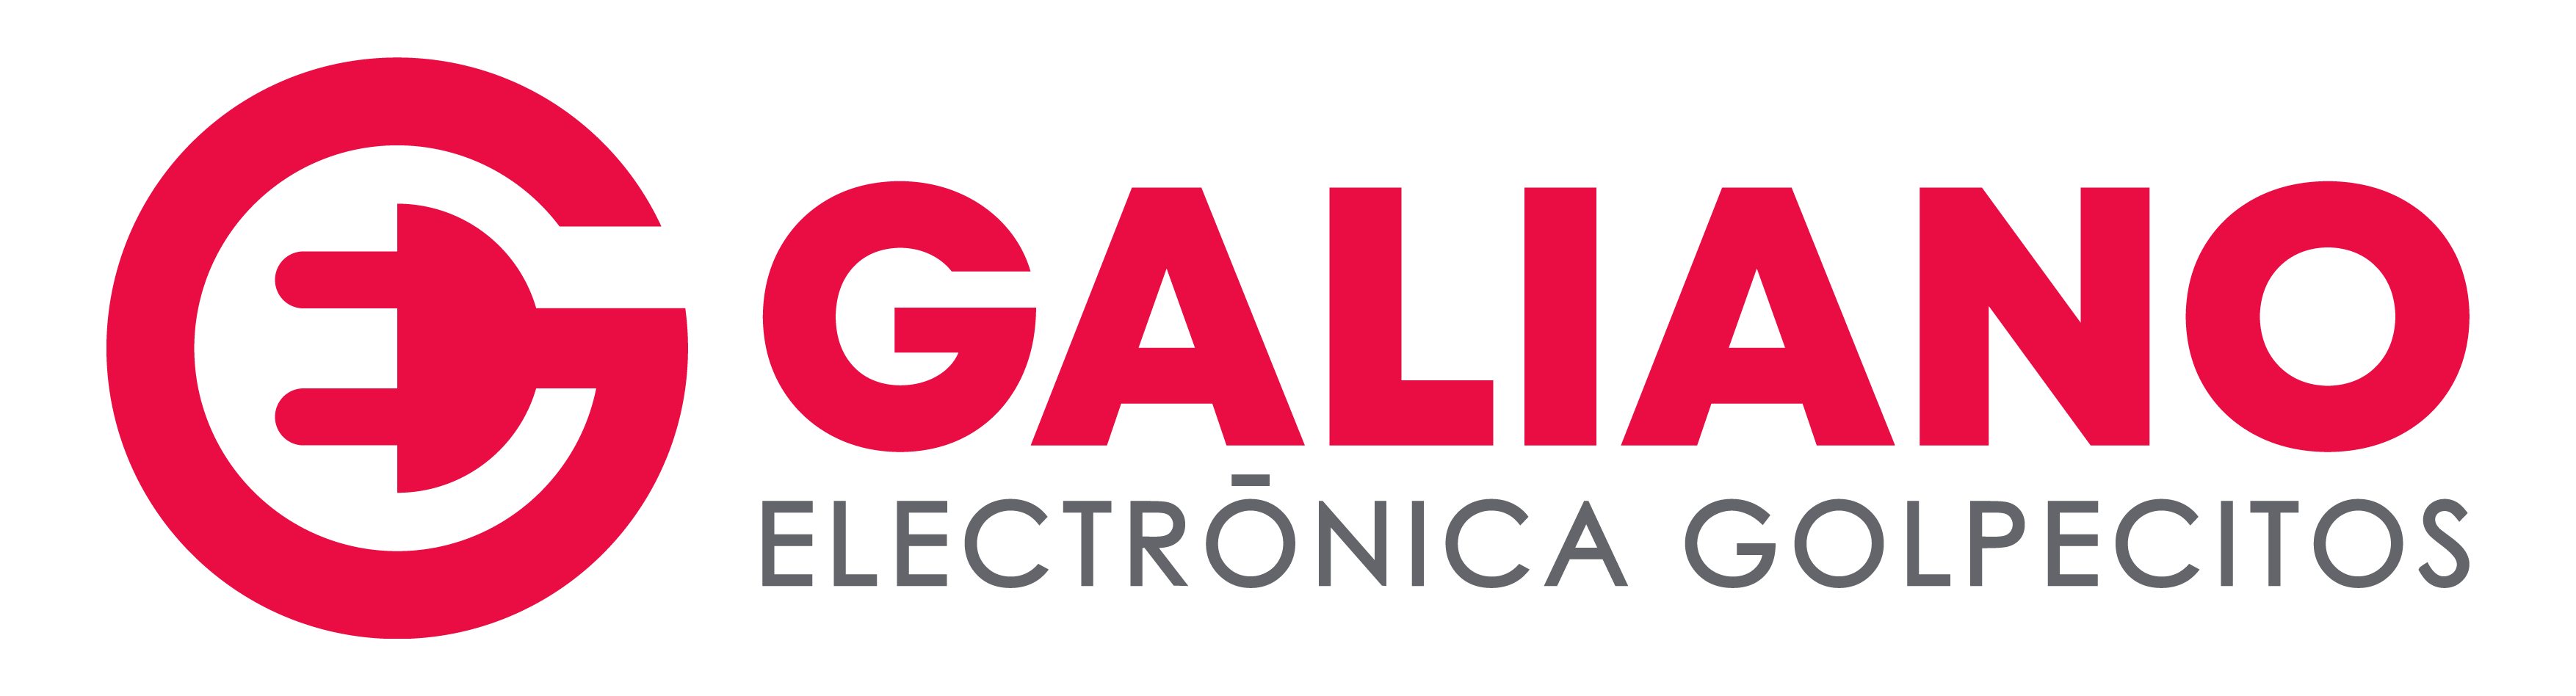 Electrónica Galiano Golpecitos